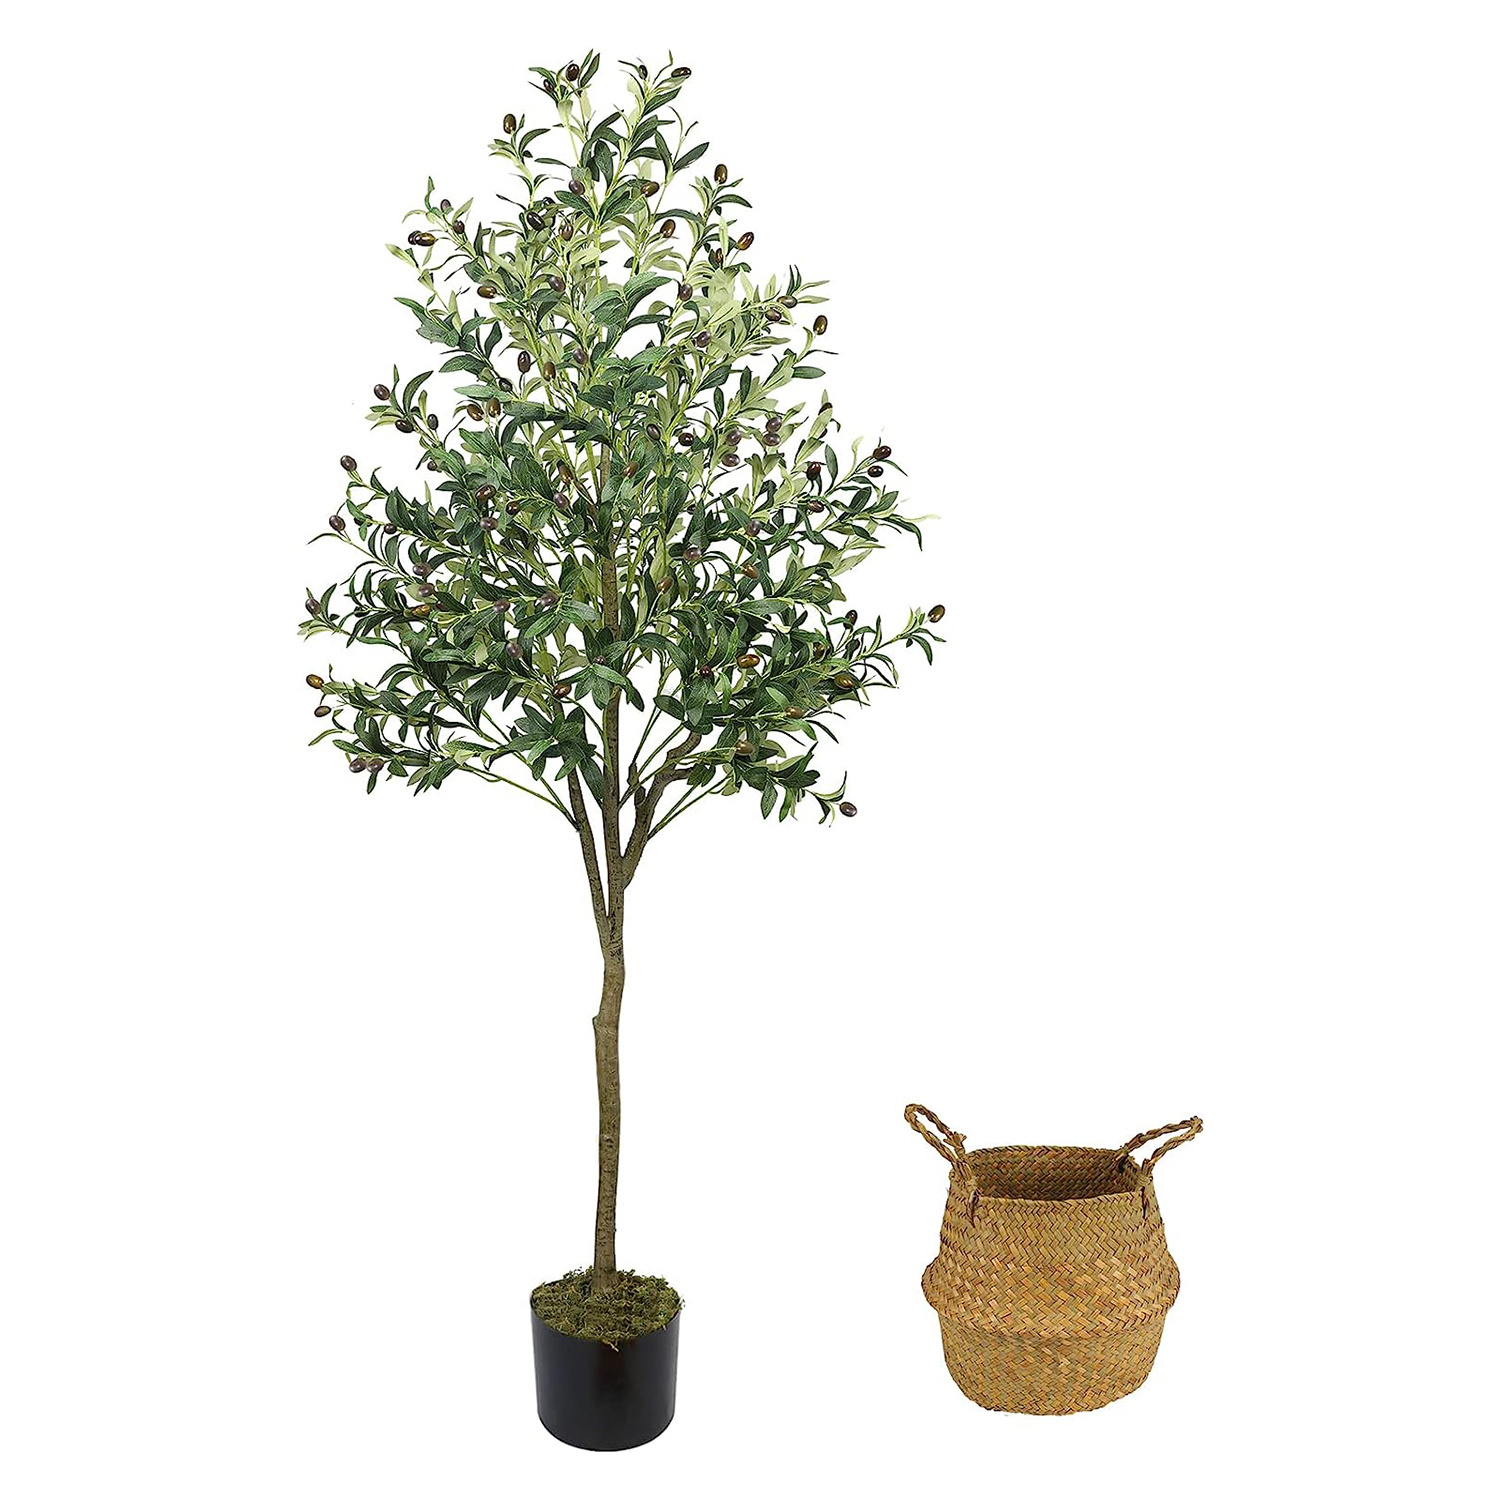 Árbol de olivo artificial, planta de olivo artificial de 6 pies en maceta,  16 ramas y frutas, adecuada para salas de estar modernas, hogar, oficina